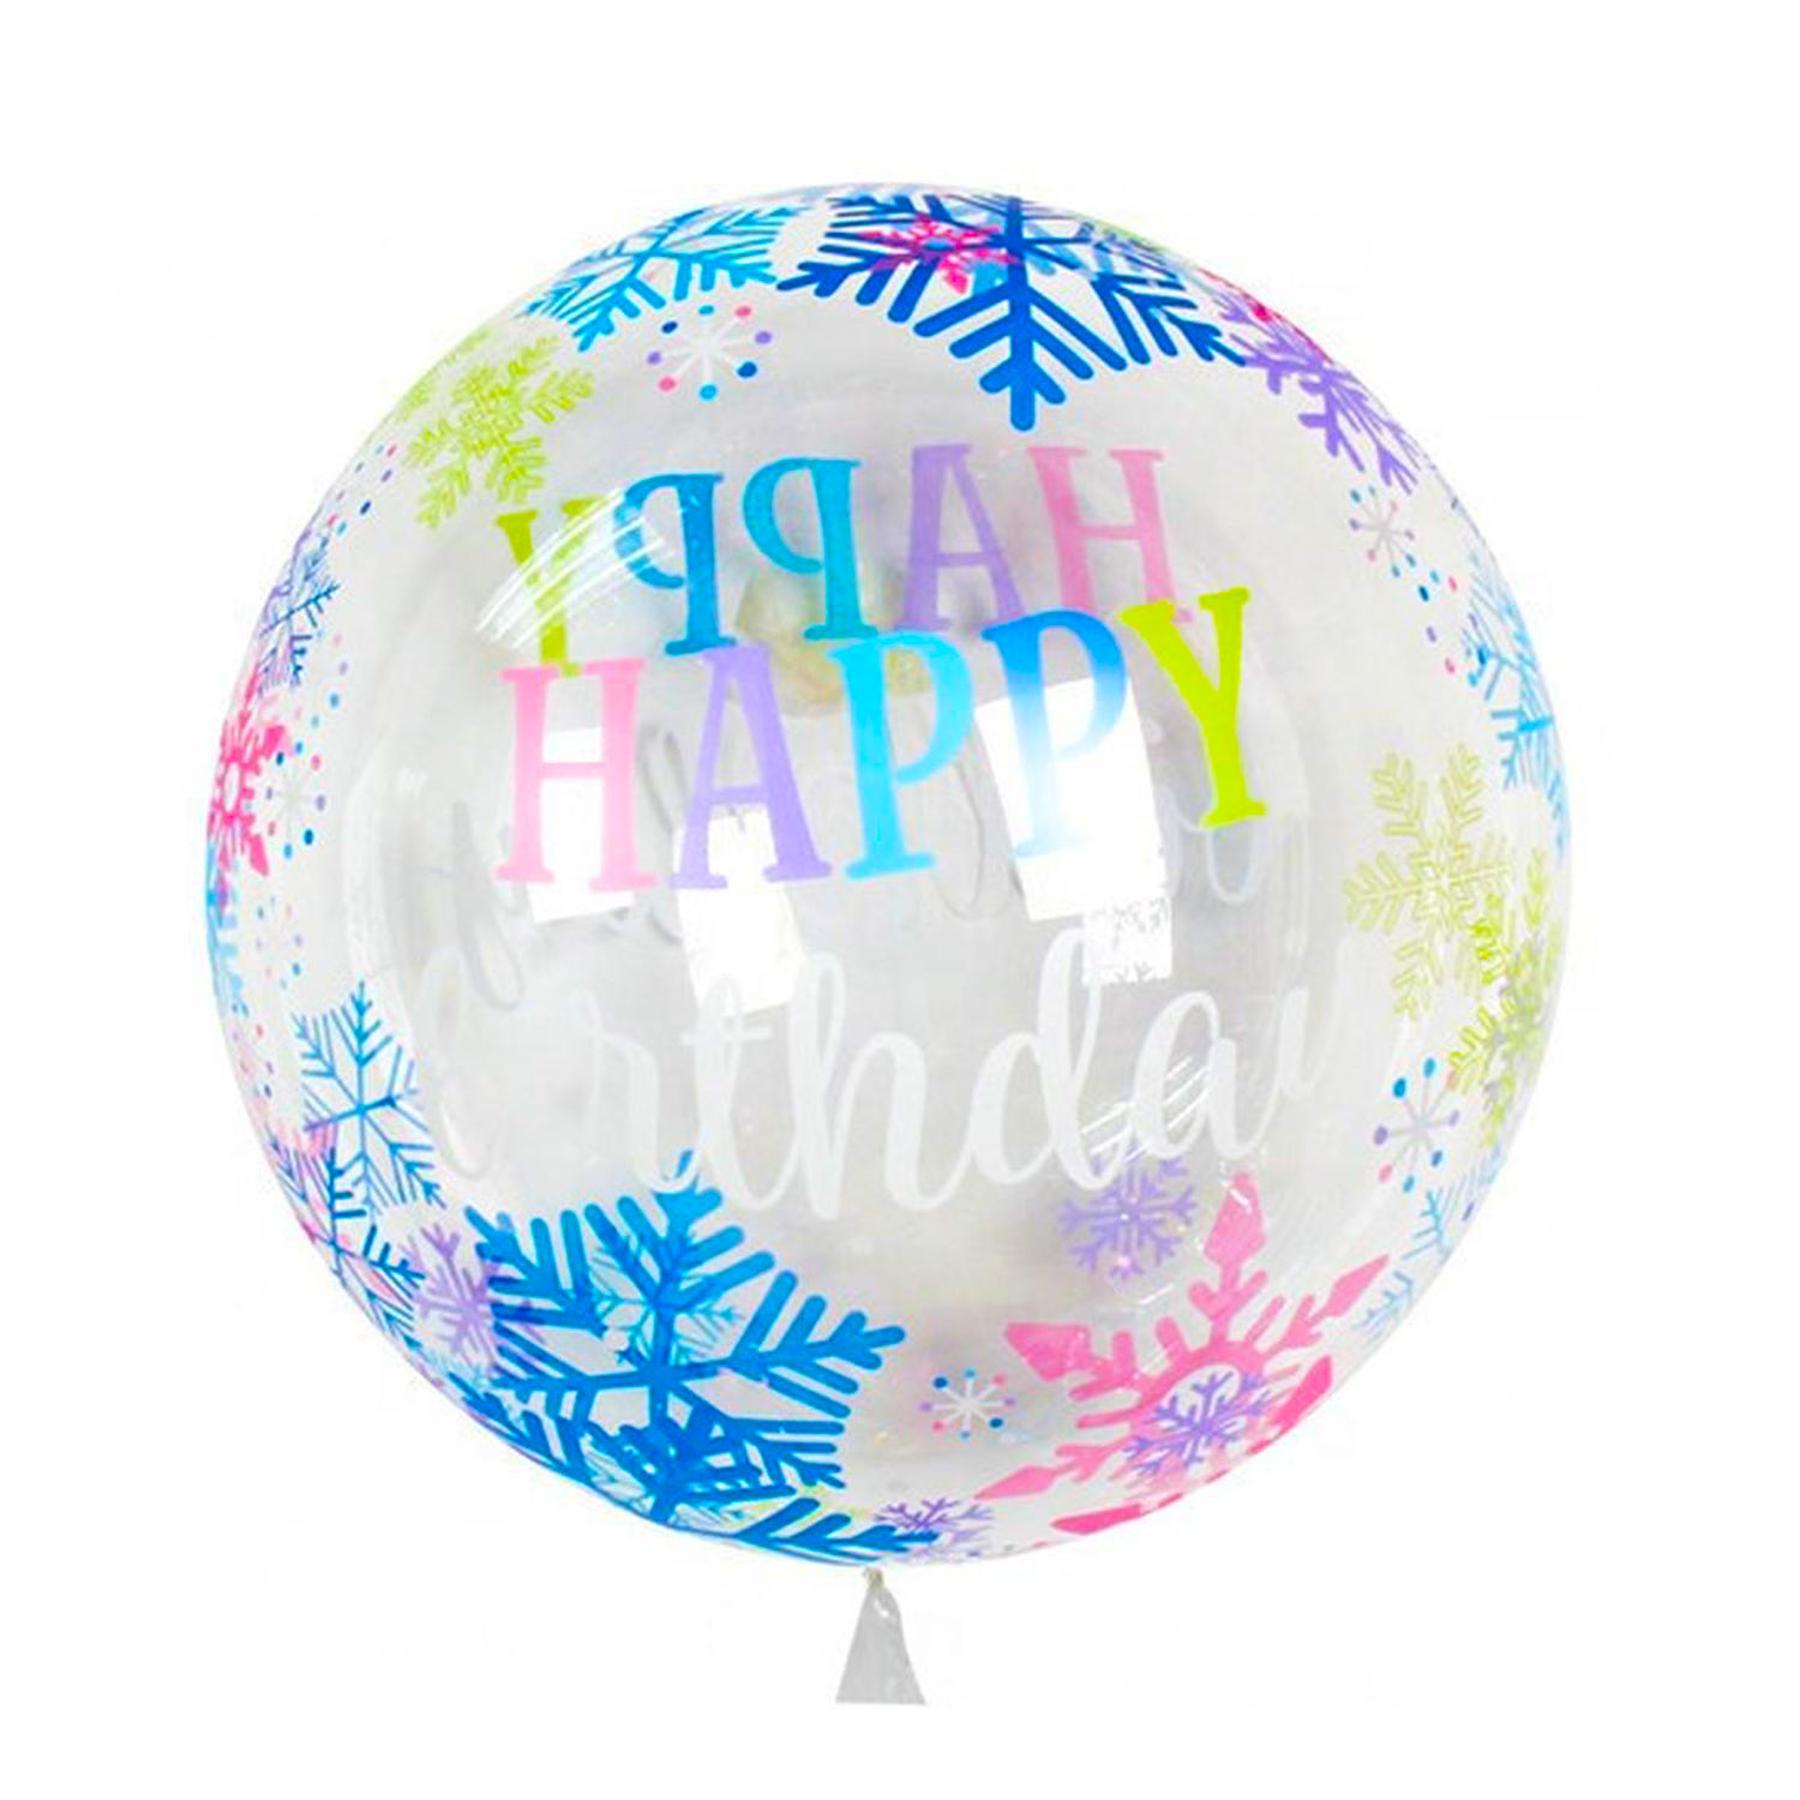 Transparenter Deko Ballon bunt mit Kristallen - Happy Birthday, 55 cm